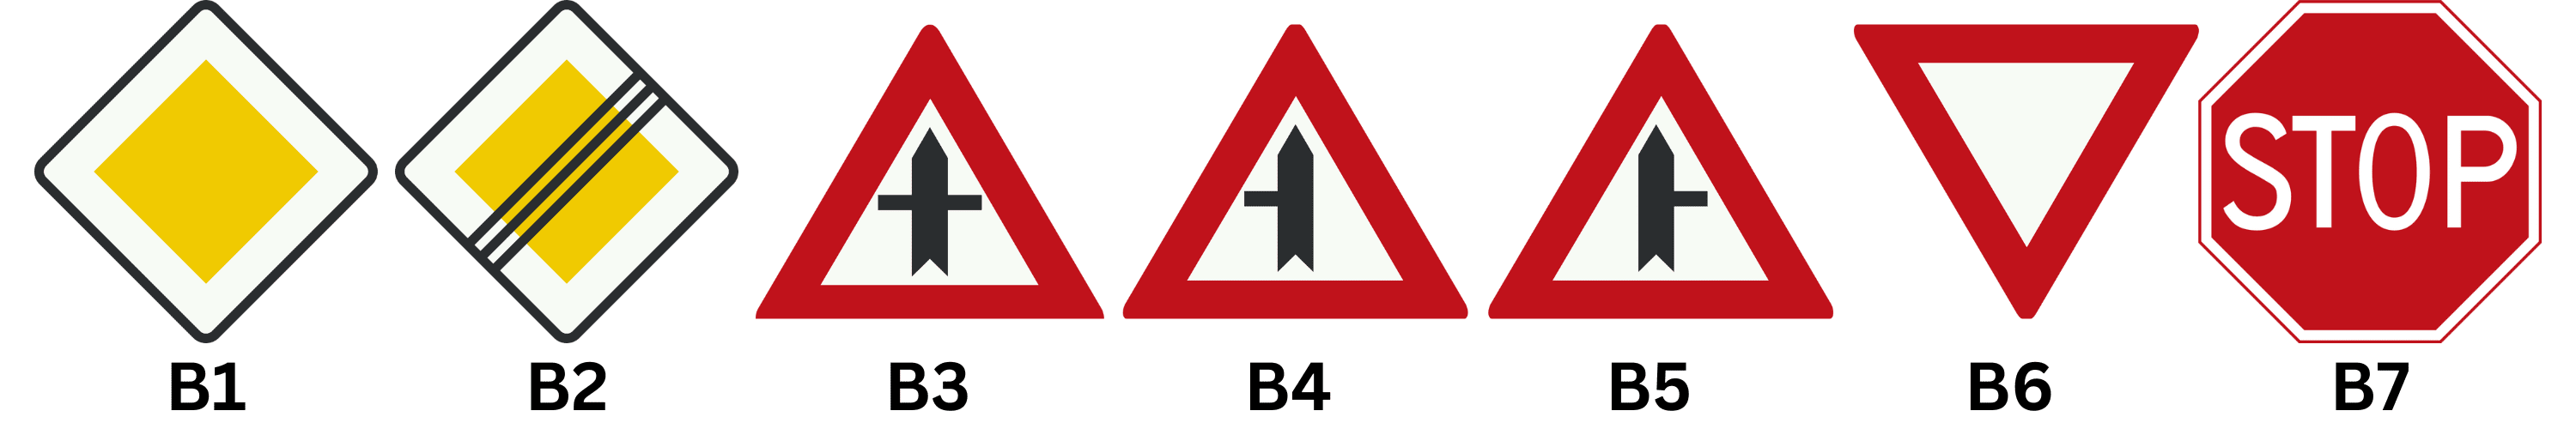 Verkeersborden B1, B2, B3, B4, B5, B6 en B7